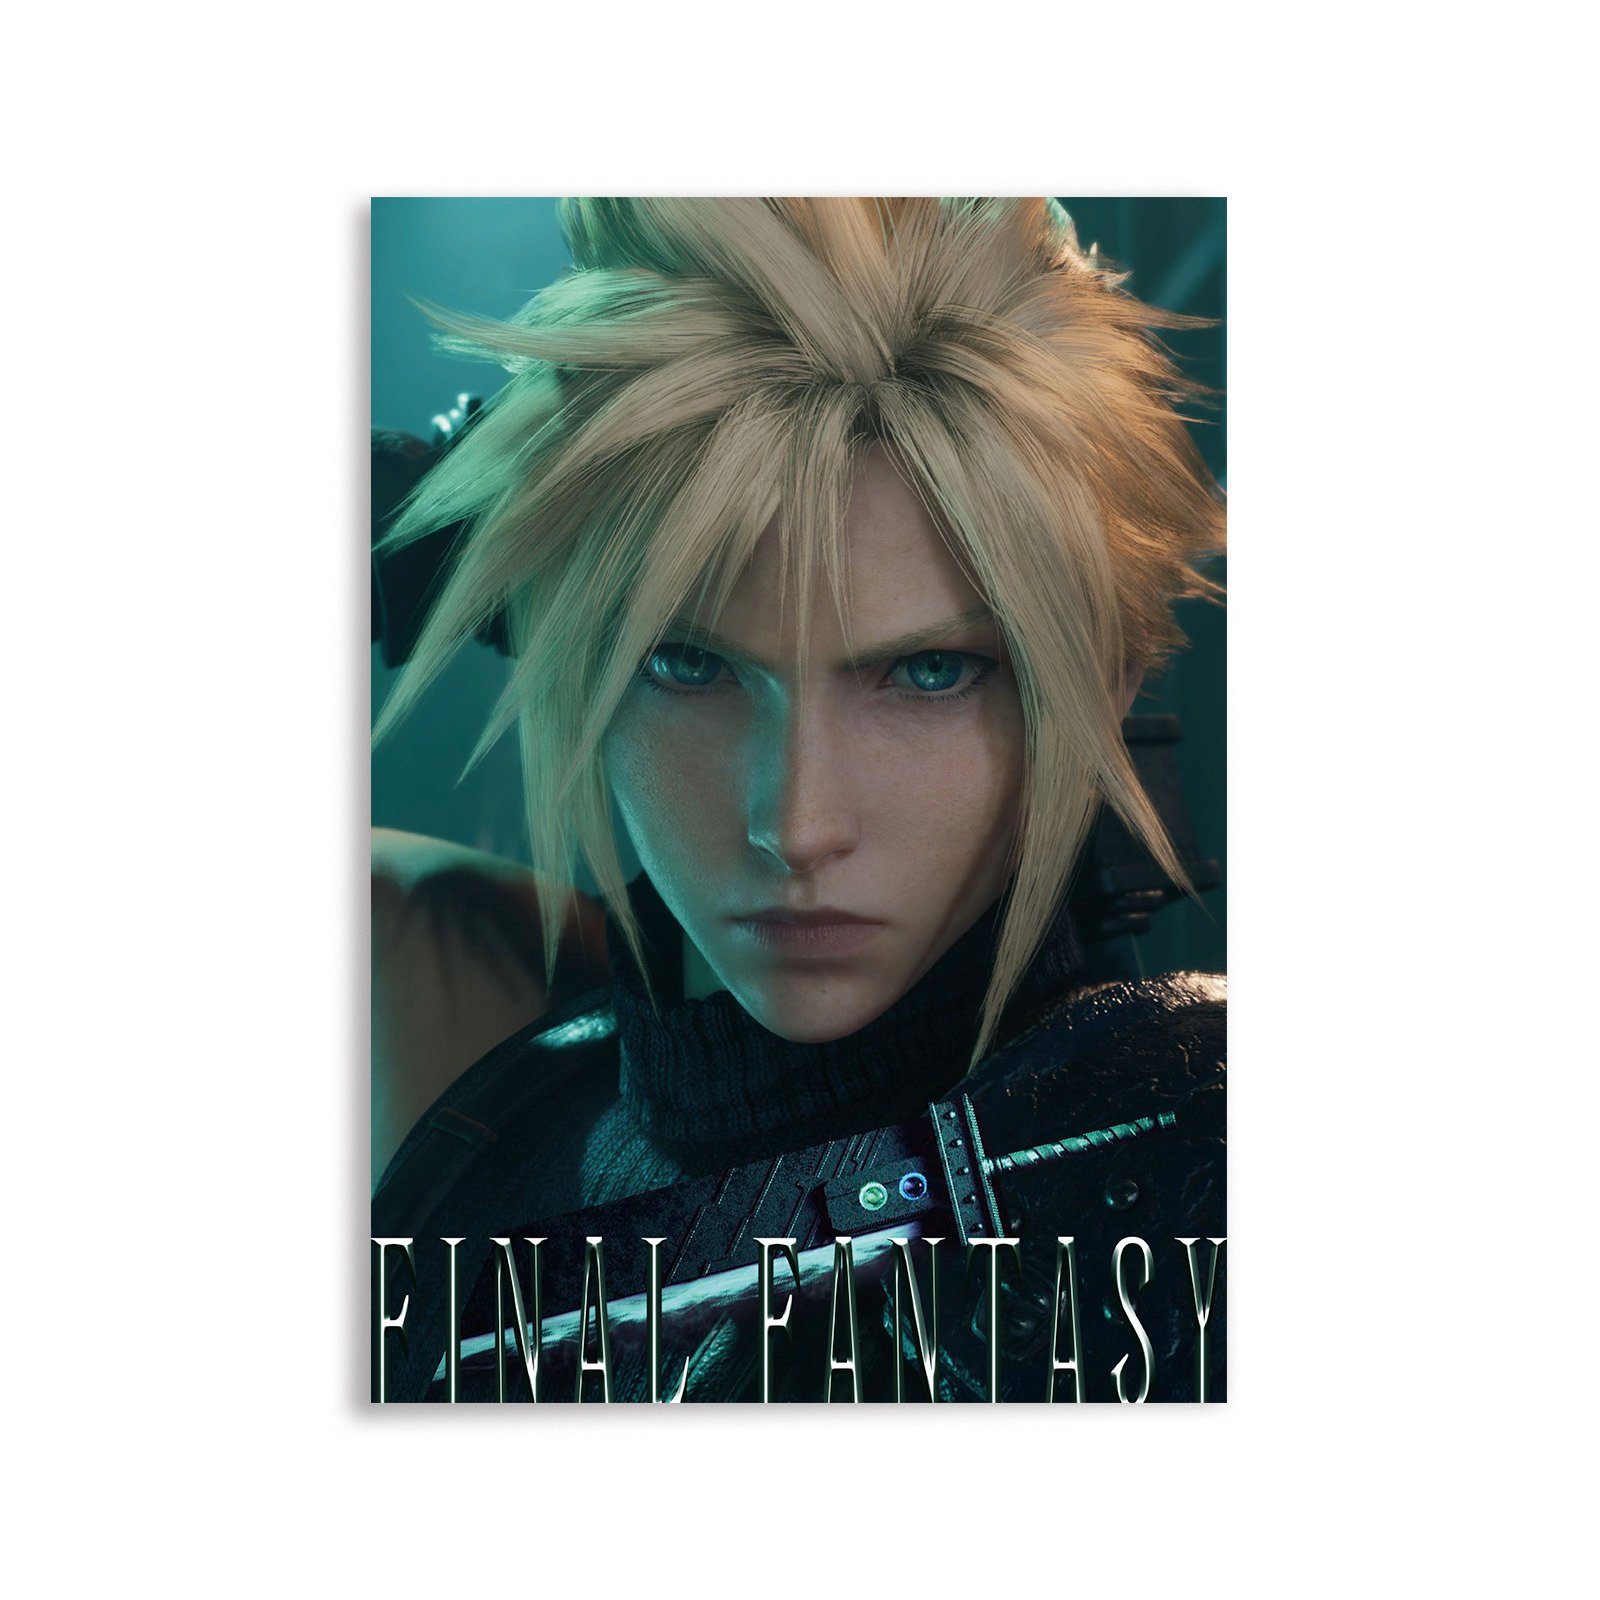 GalaxyCat Poster Hochwertiges Final Fantasy VII Wandbild, Cloud Strife auf Hartschaump, Cloud Strife, Cloud Strife auf Hartschaumplatte